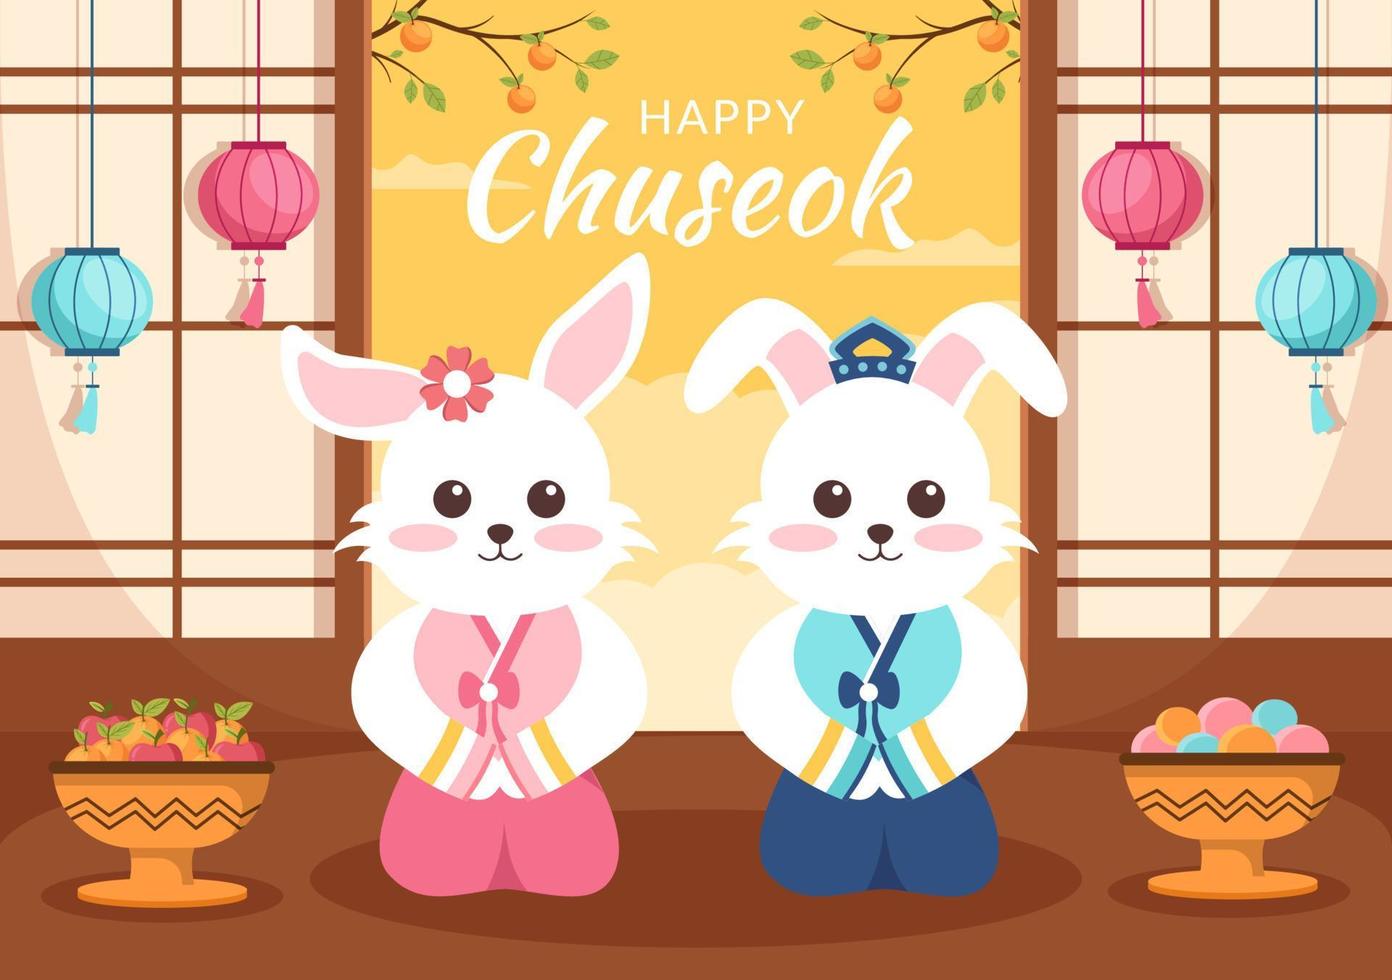 joyeux jour de chuseok en corée pour thanksgiving avec un joli personnage de lapin dans le hanbok traditionnel, la pleine lune et le paysage du ciel en illustration de dessin animé plat vecteur